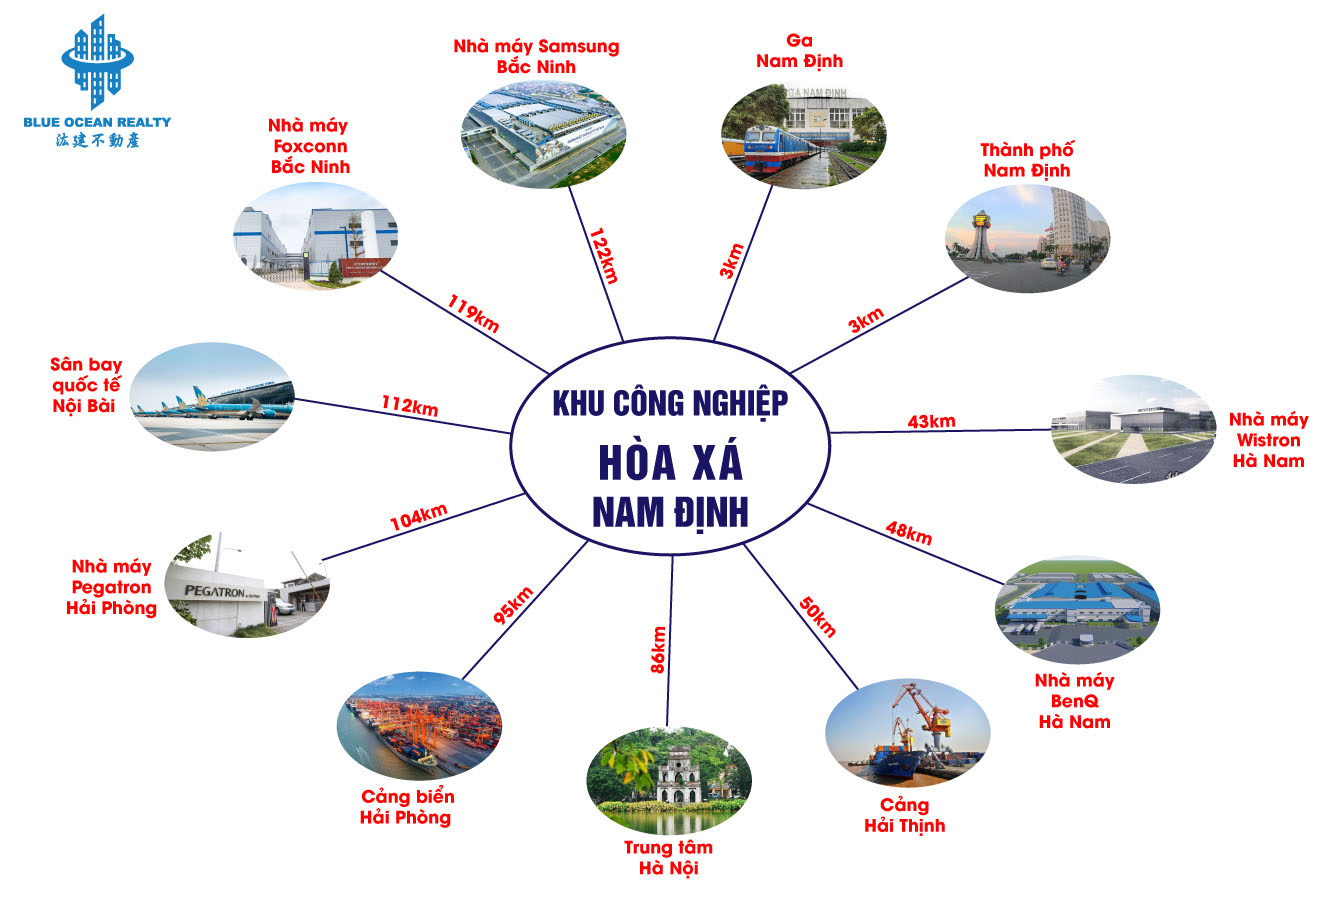 Khu công nghiệp (KCN) Hòa Xá tỉnh Nam Định